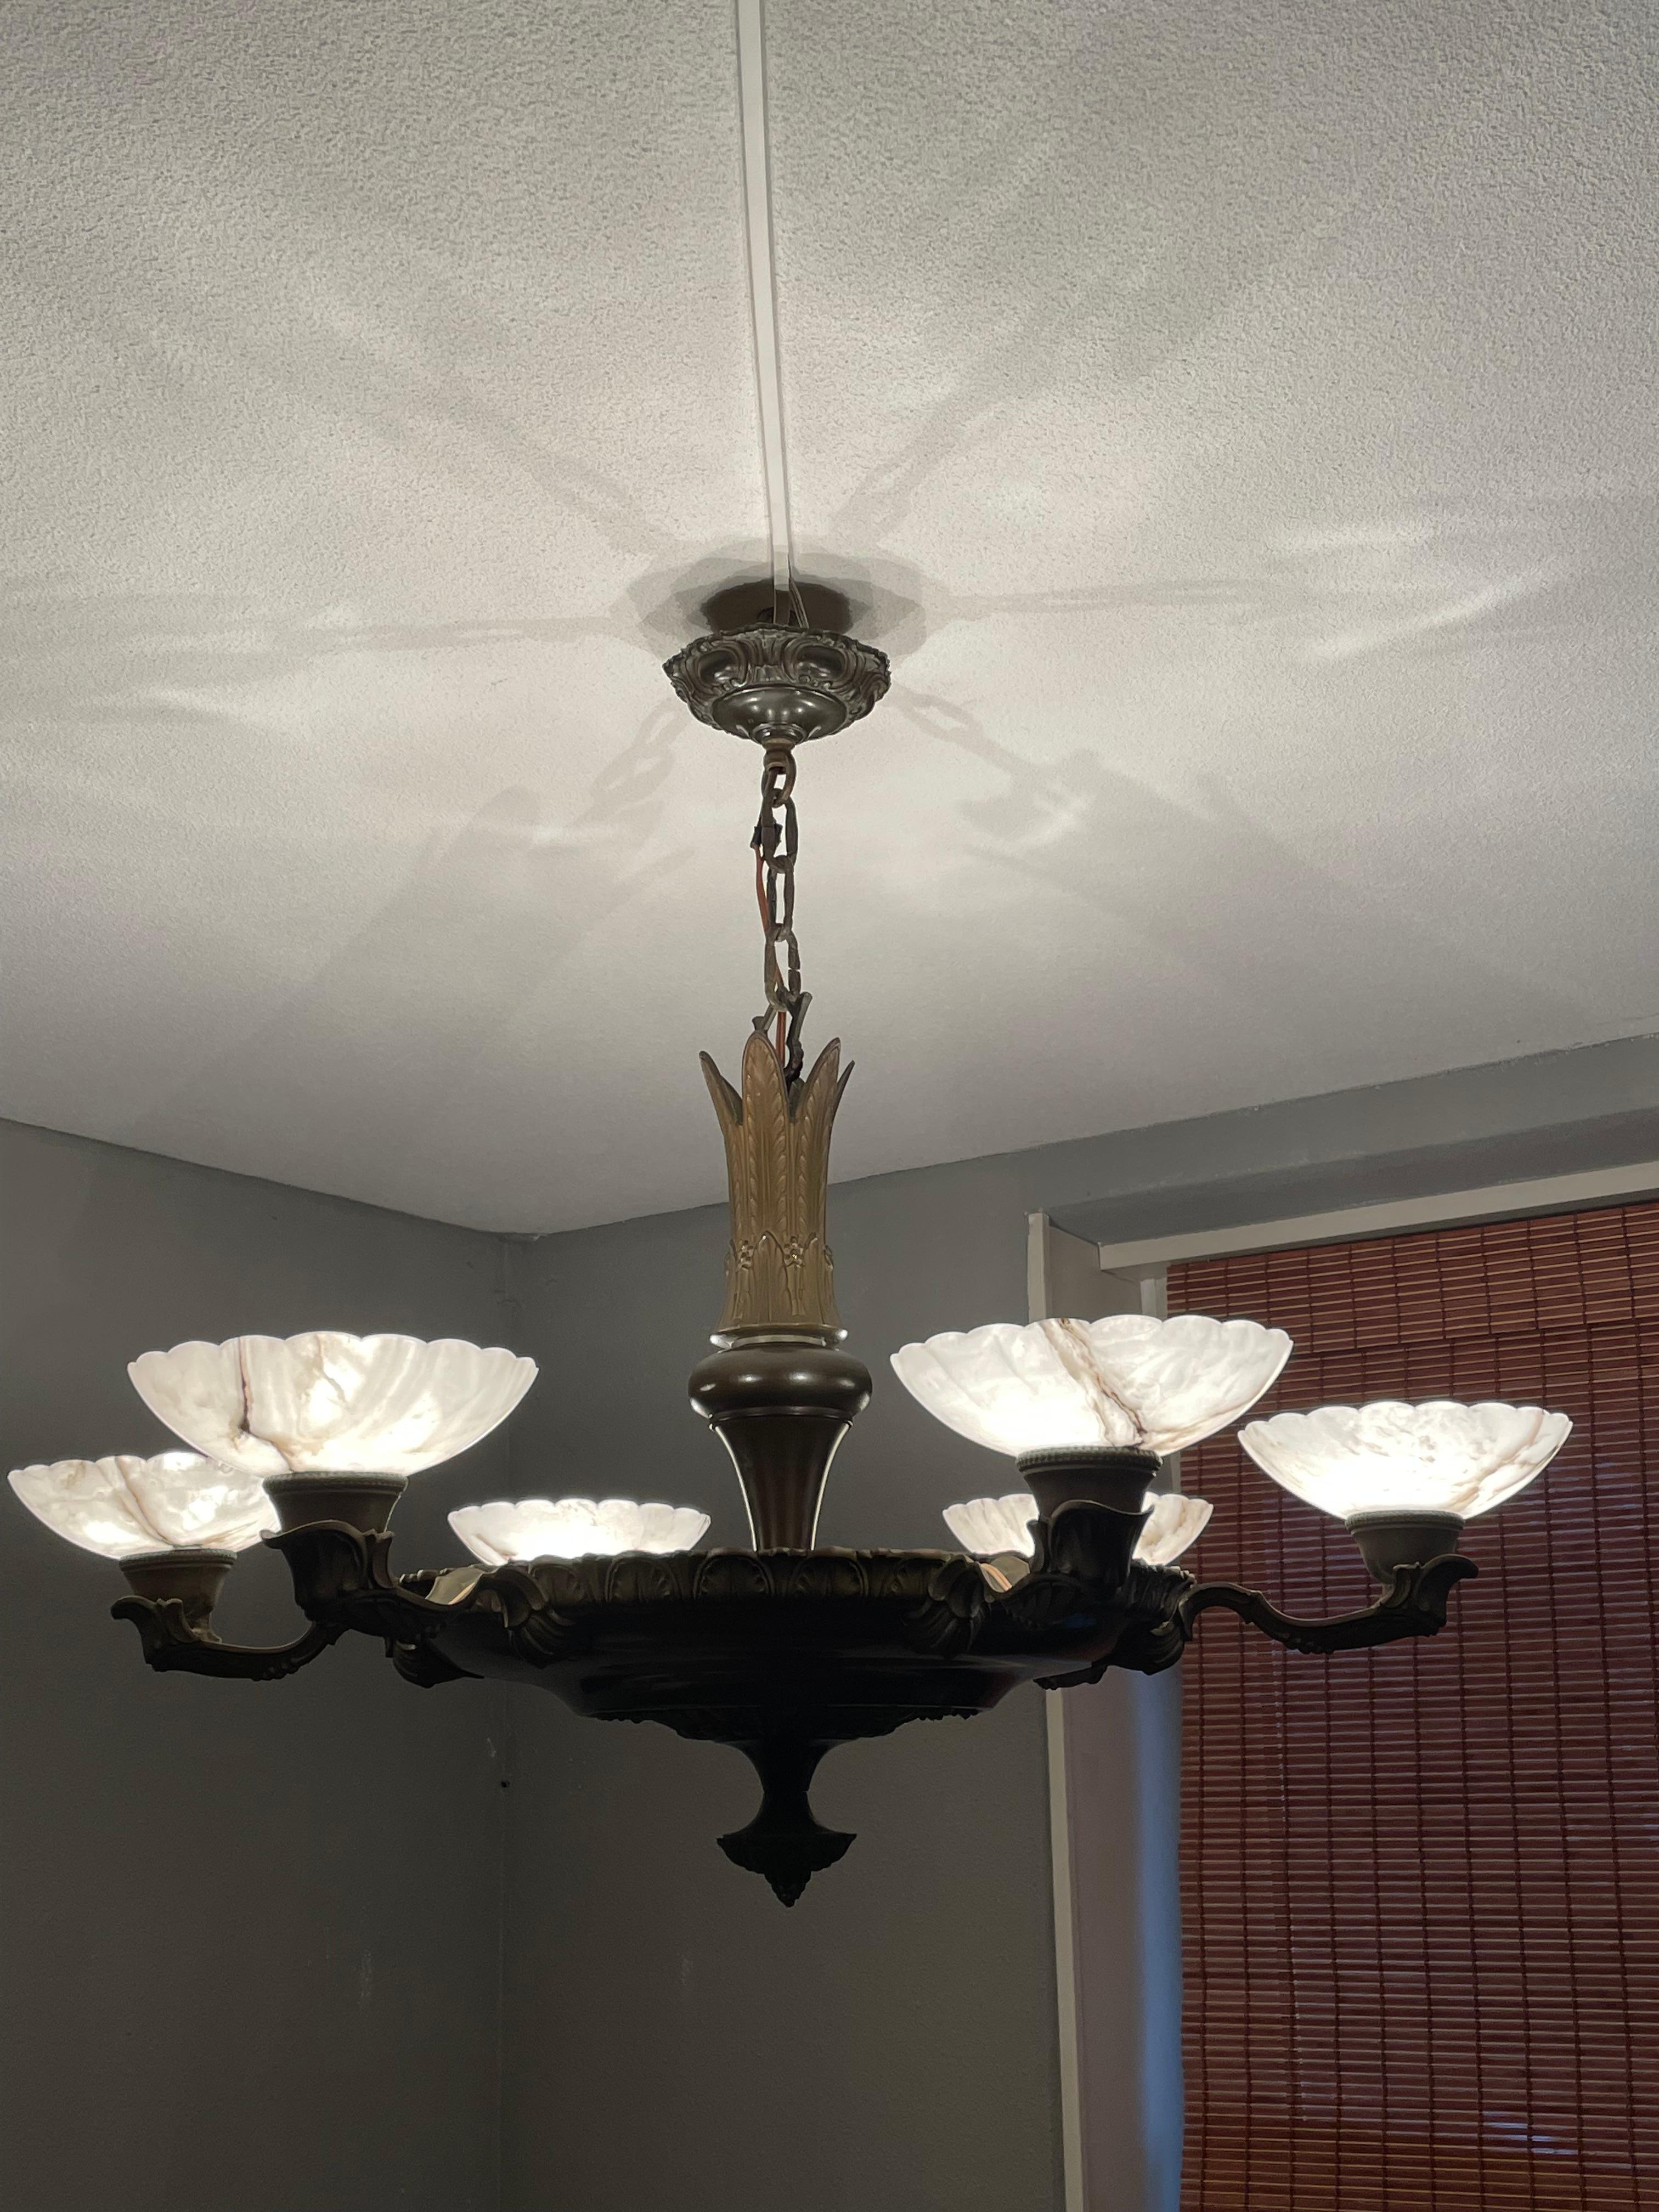 Llamativa y exclusiva lámpara de latón y alabastro de la década de 1910 para crear el ambiente perfecto.

Si buscas una lámpara extraordinaria para decorar tu vivienda, esta lámpara antigua de la época Art Déco podría ser la tuya. La combinación del